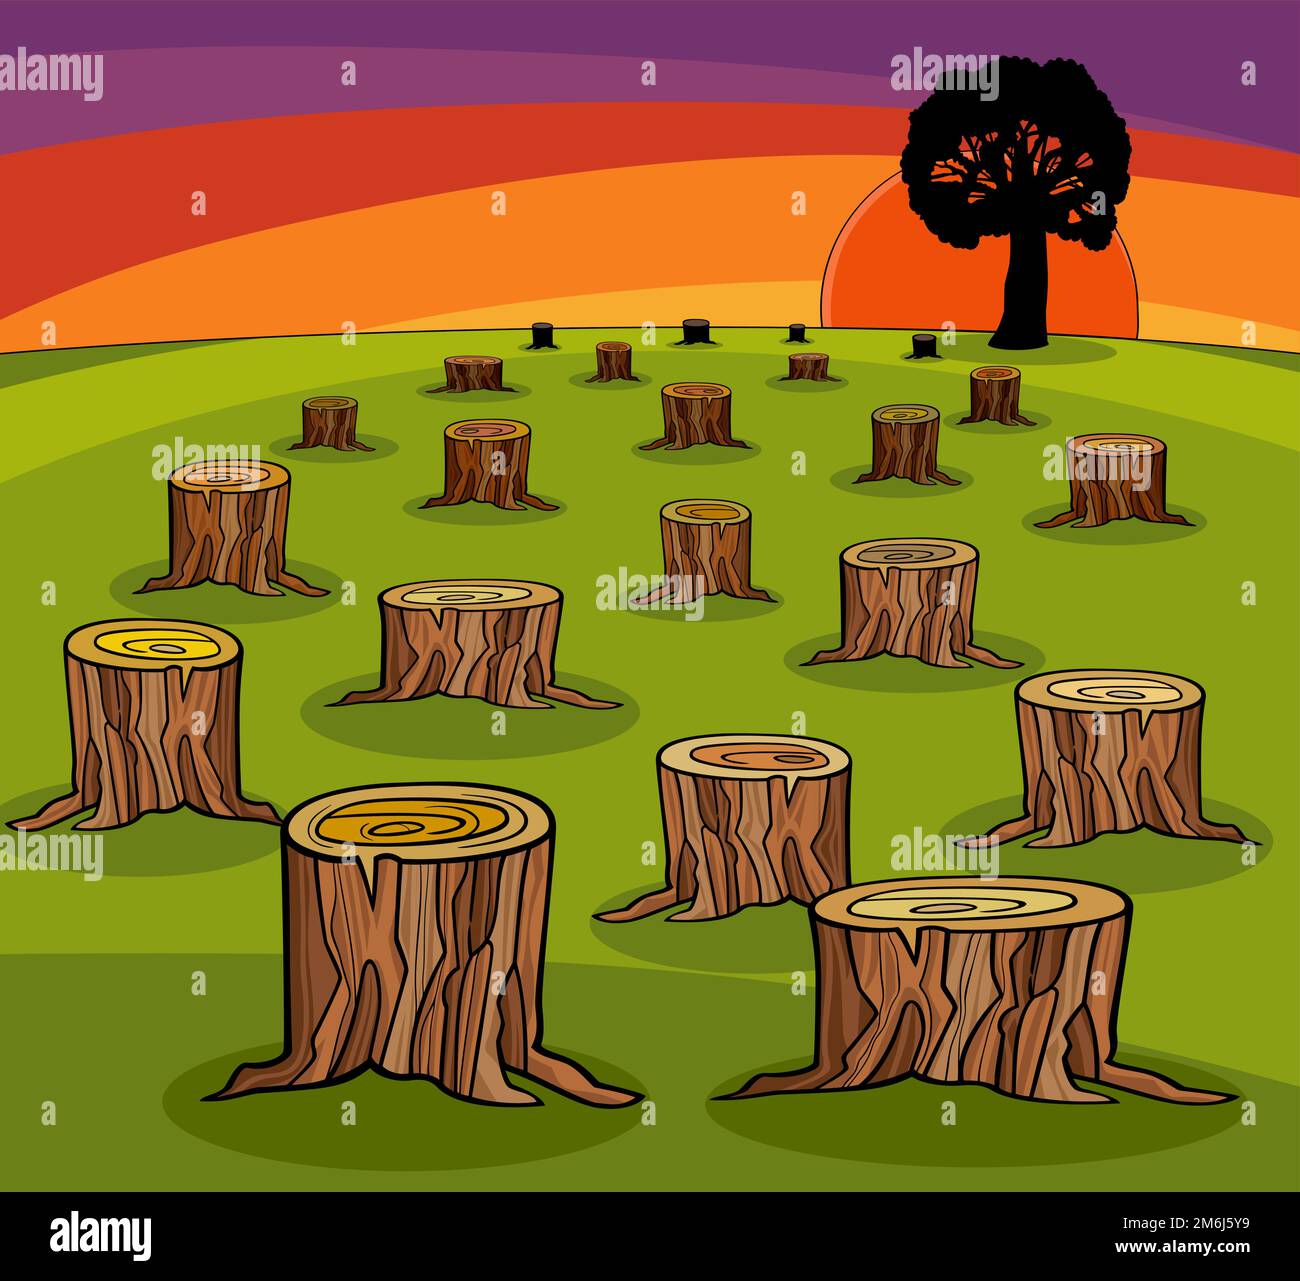 Karikaturendarstellung von Baumstämmen aus Cut Frest und letztem ökologischem Konzept Stock Vektor